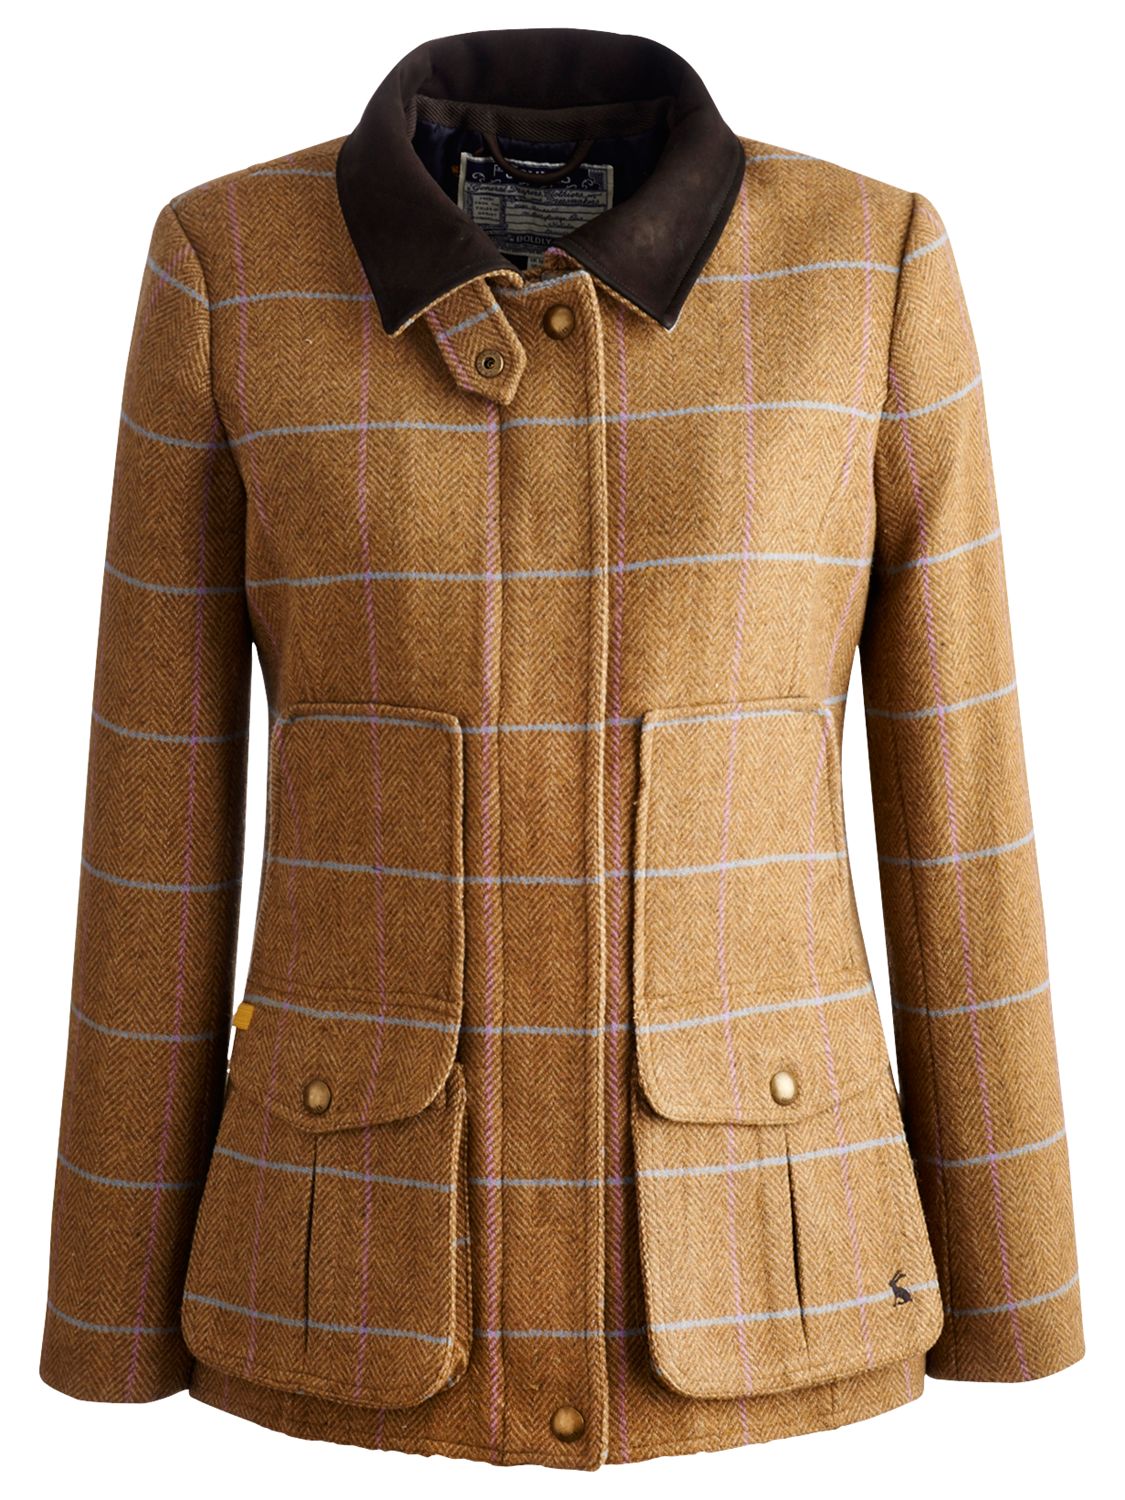 Joules Fieldcoat Tweed Jacket, Harkworth Tweed at John Lewis & Partners